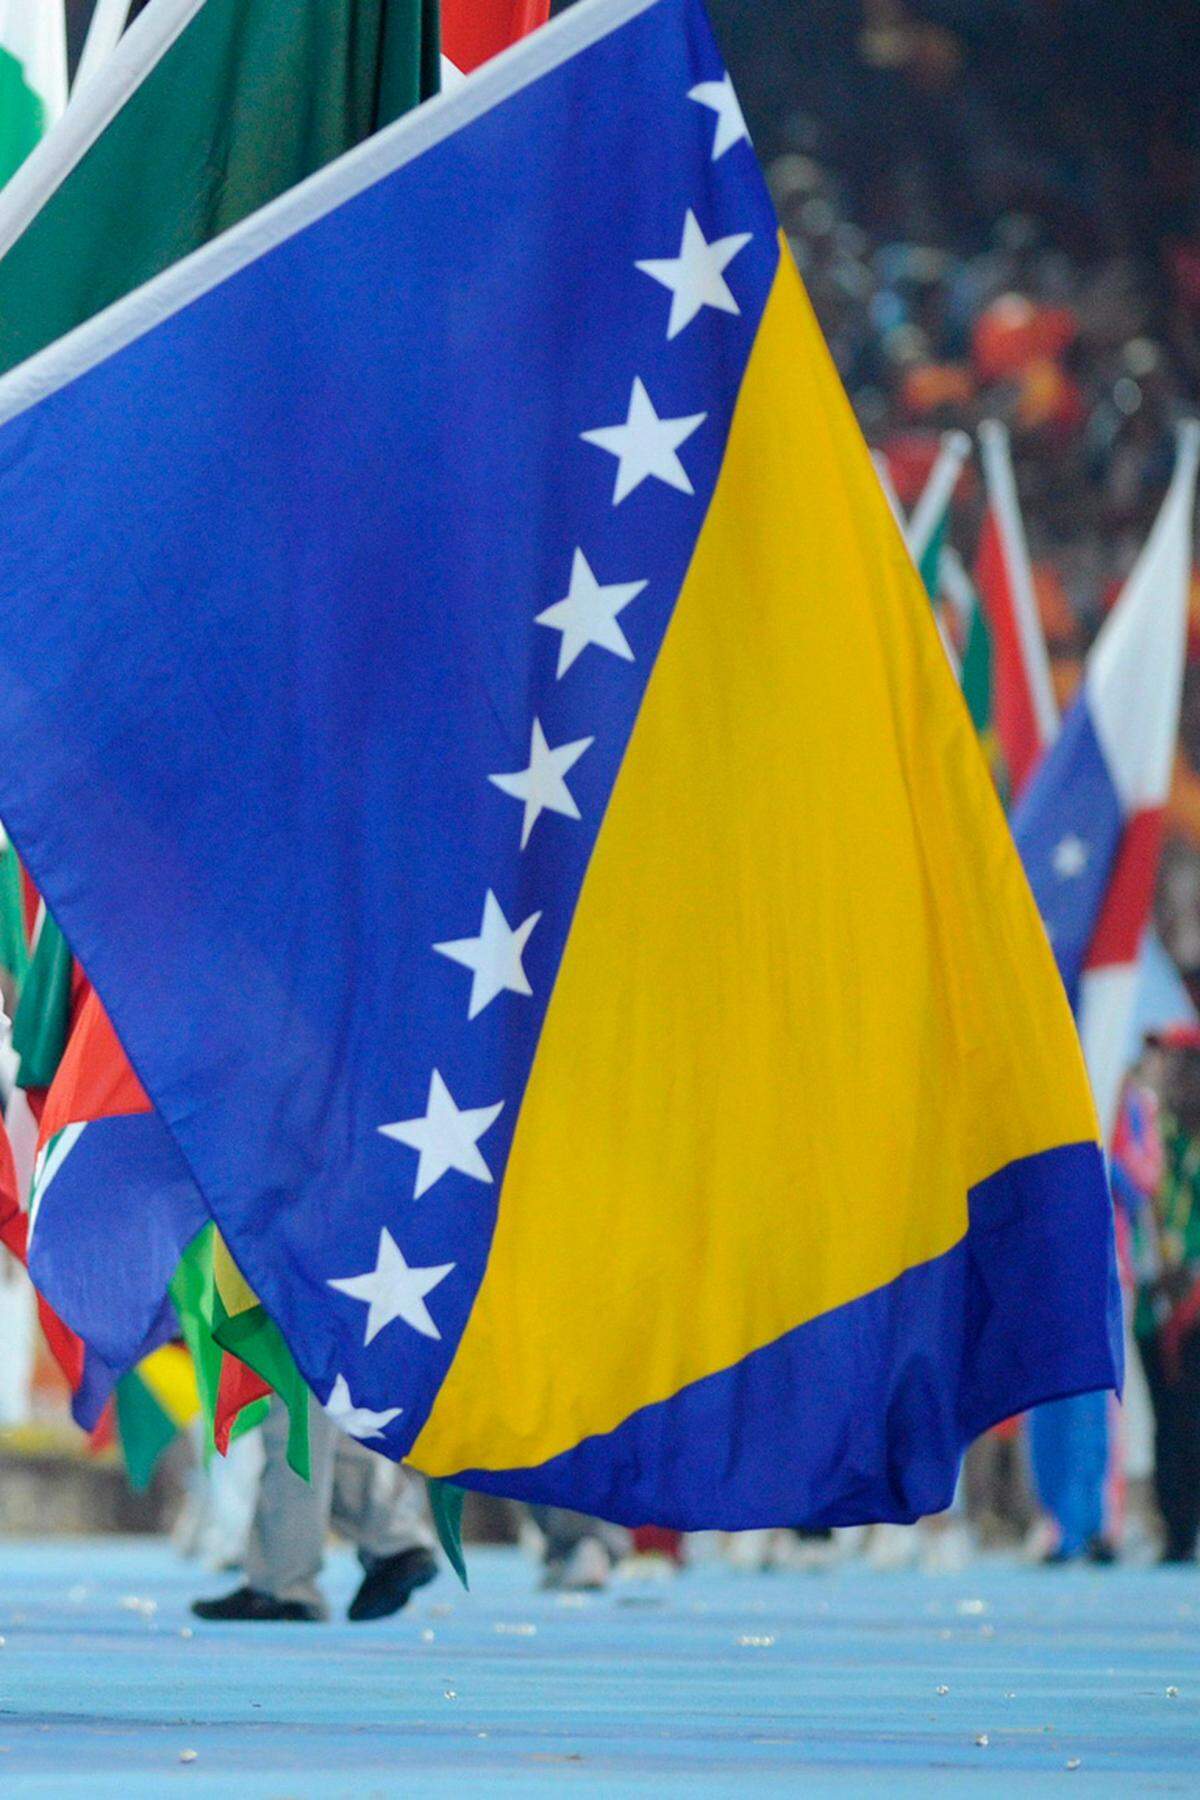 Bosnien-Herzegowina ist weiter "nur" ein potenzieller Anwärter. Im Land sind noch EU-Soldaten zur Verhinderung von Zusammenstößen der unterschiedlichen Volksgruppen sowie zur Ausbildung von Sicherheitskräften eingesetzt. Die Kommission sieht erhebliche Mängel, deshalb wird es keine raschen Verhandlungen über einen EU-Beitritt geben.